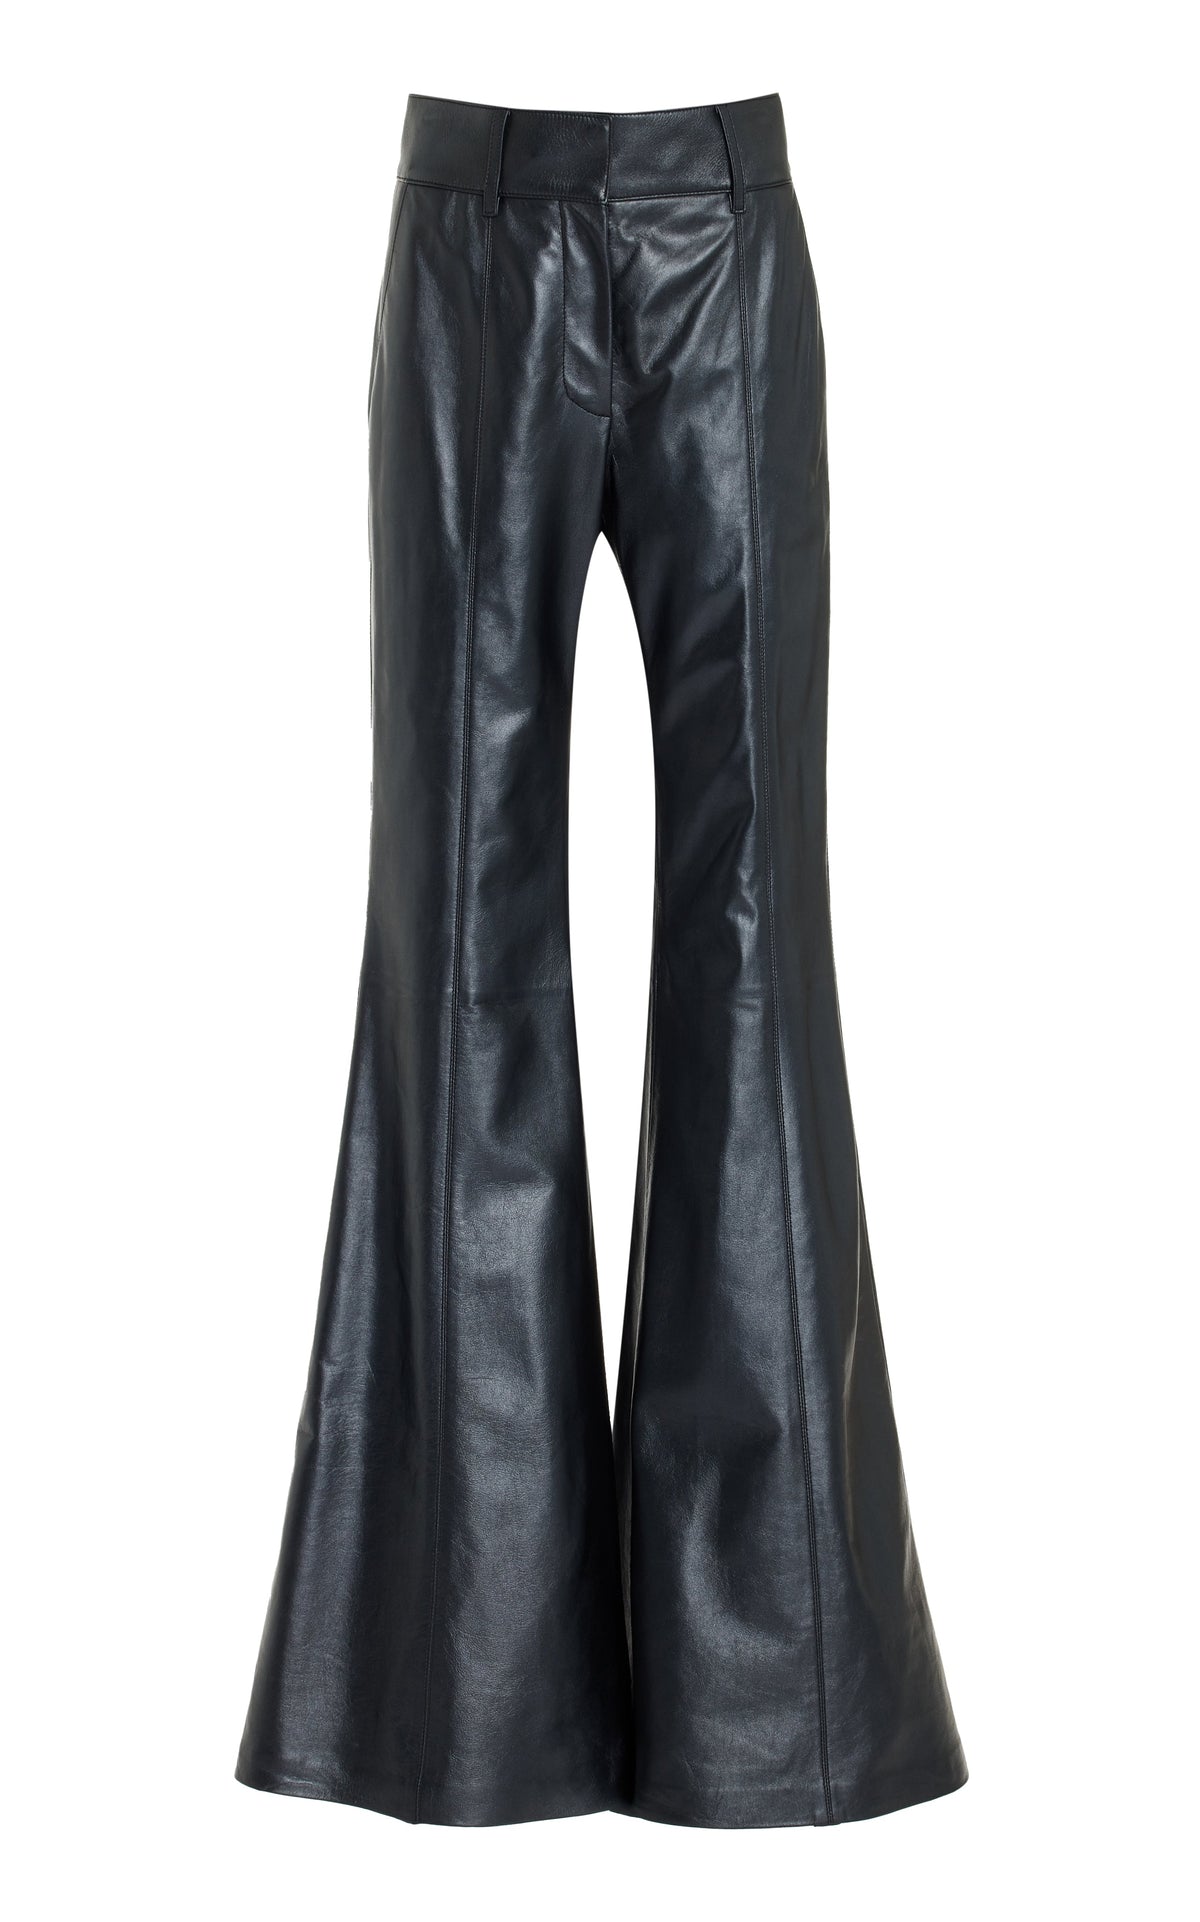 Rhein Pant in Black Metallic Nappa Leather